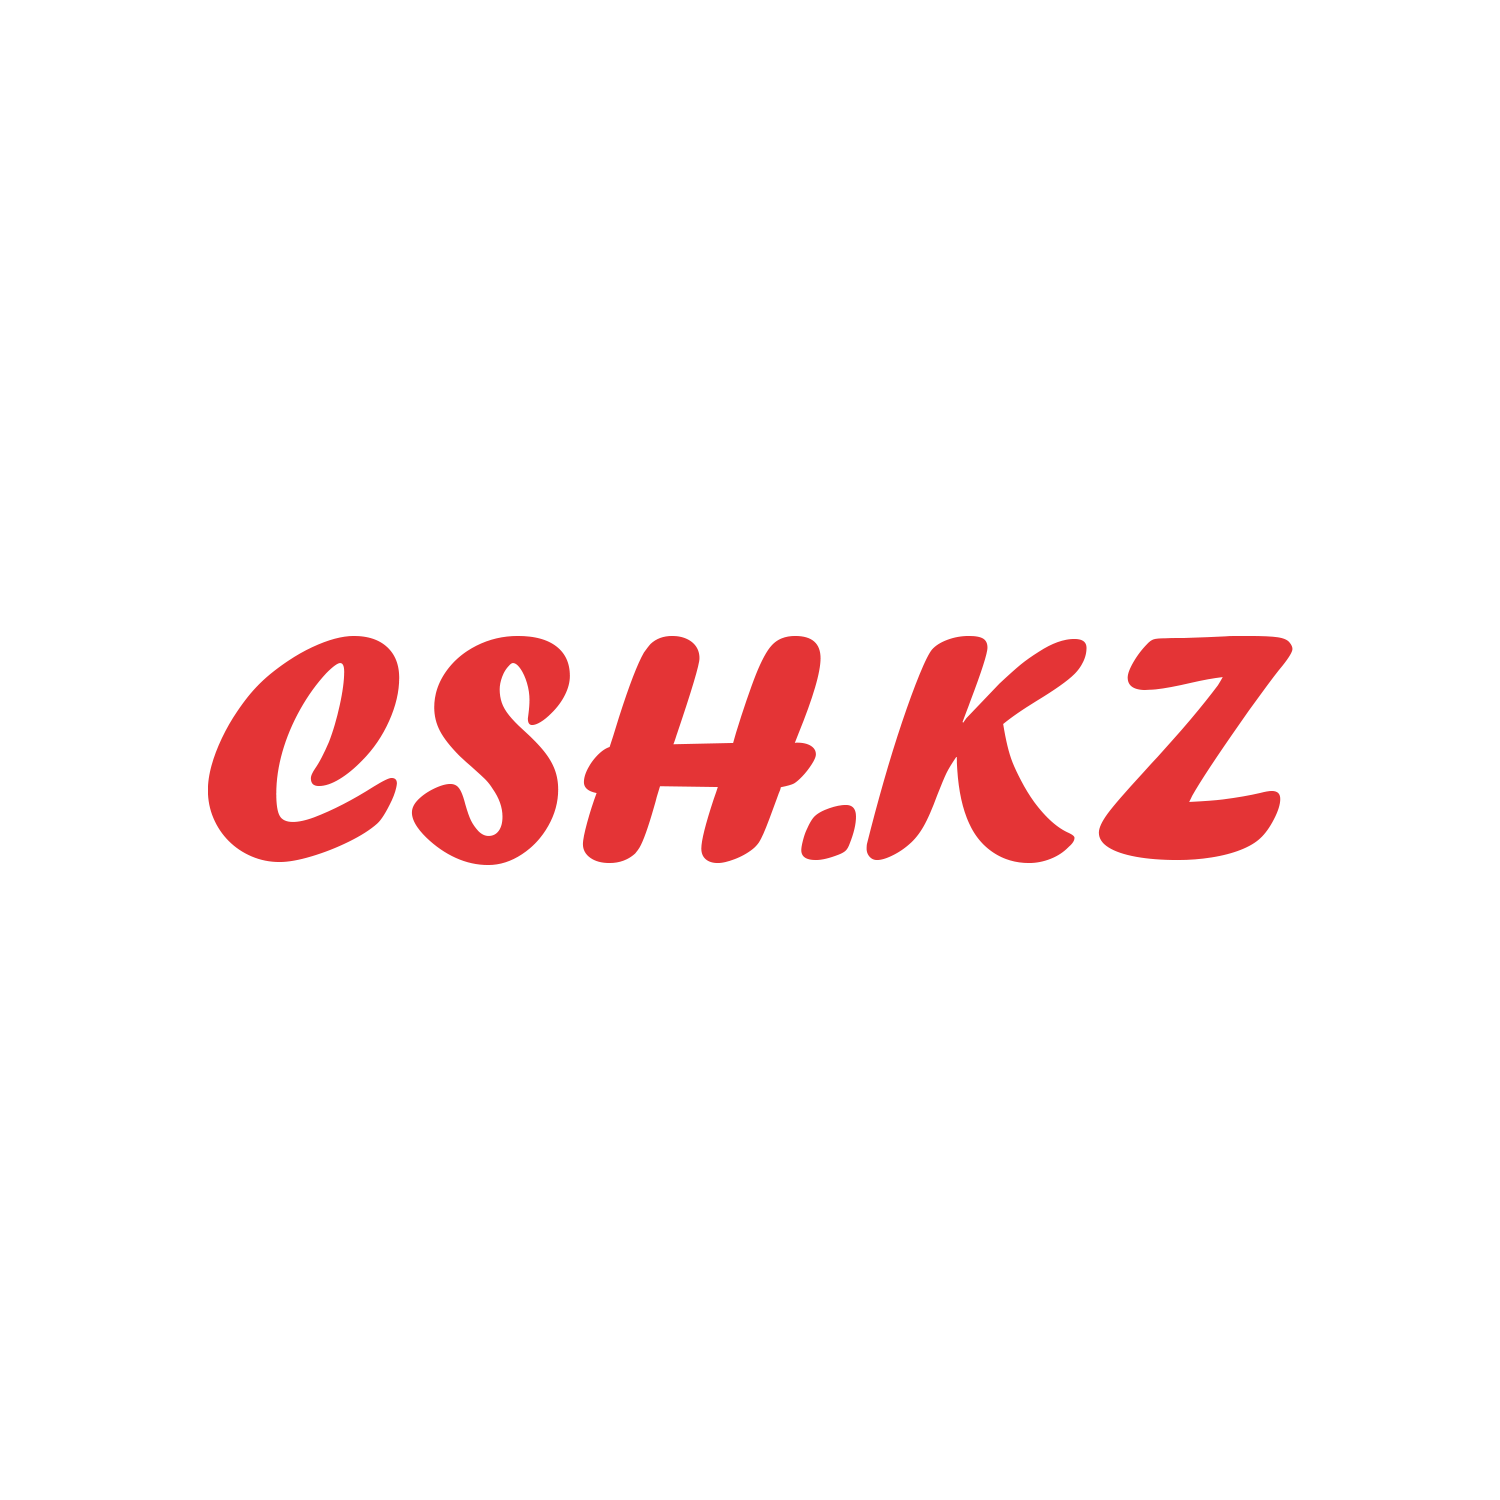 csh.kz